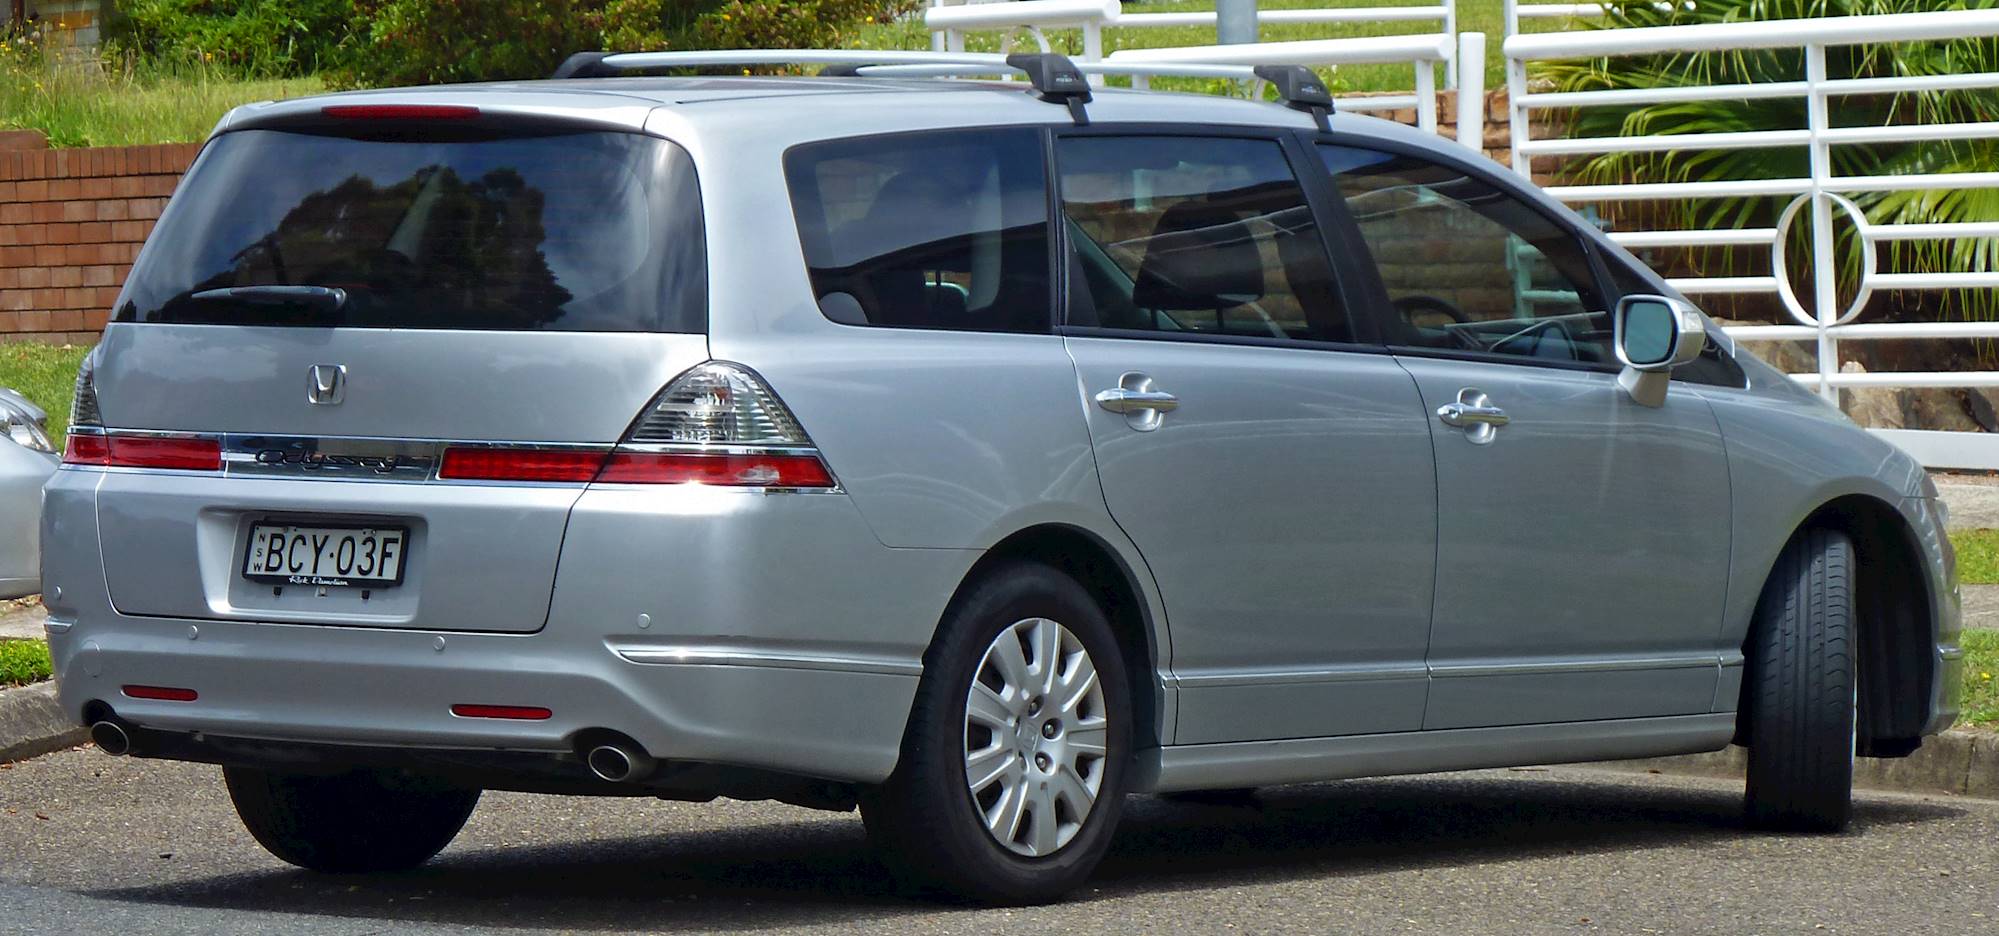 2010 Honda Odyssey Touring - Passenger Minivan 3.5L V6 auto